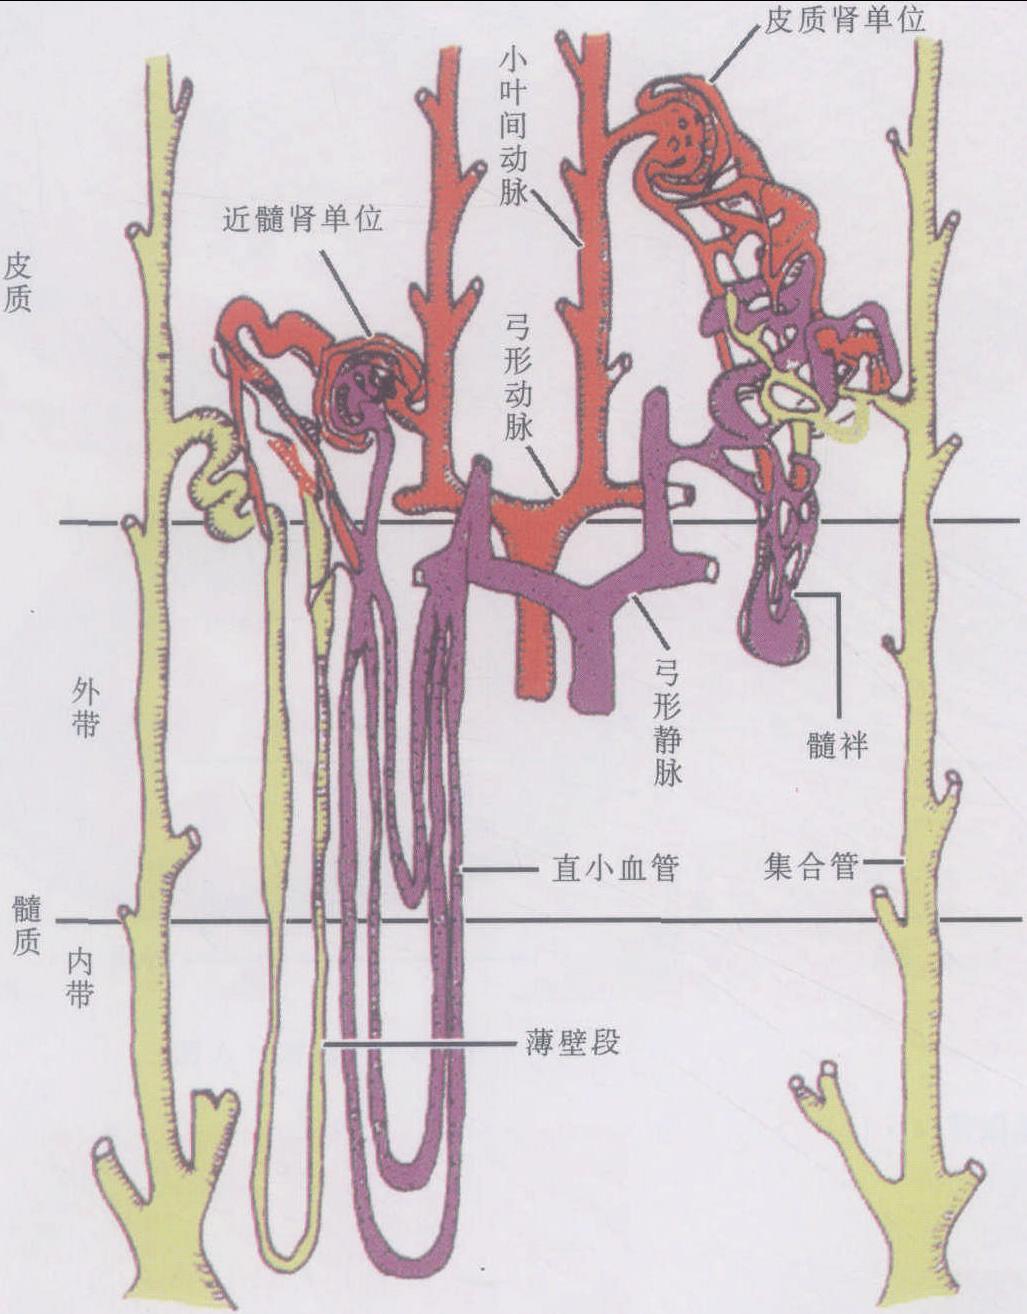 肾动脉五级血管解剖图图片